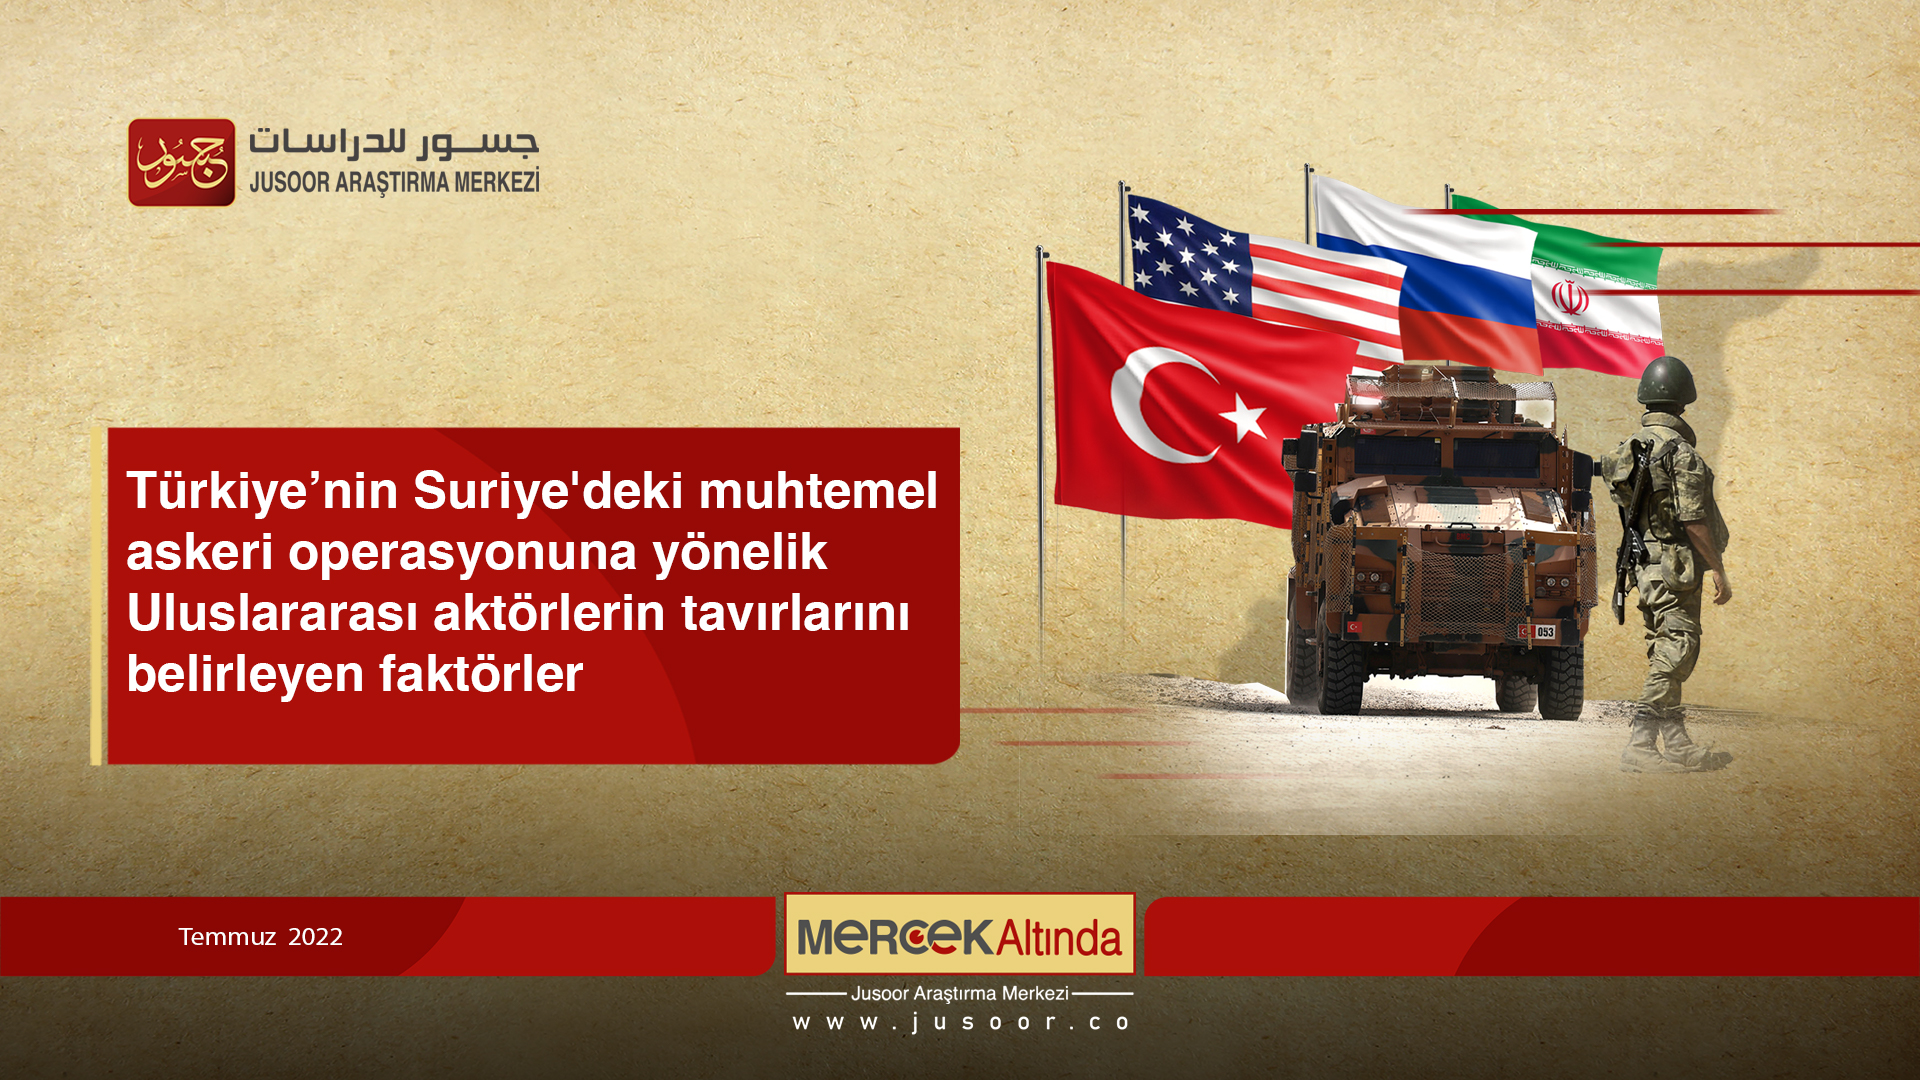 Türkiye’nin Suriye'deki muhtemel askeri operasyonuna yönelik Uluslararası aktörlerin tavırlarını belirleyen faktörler